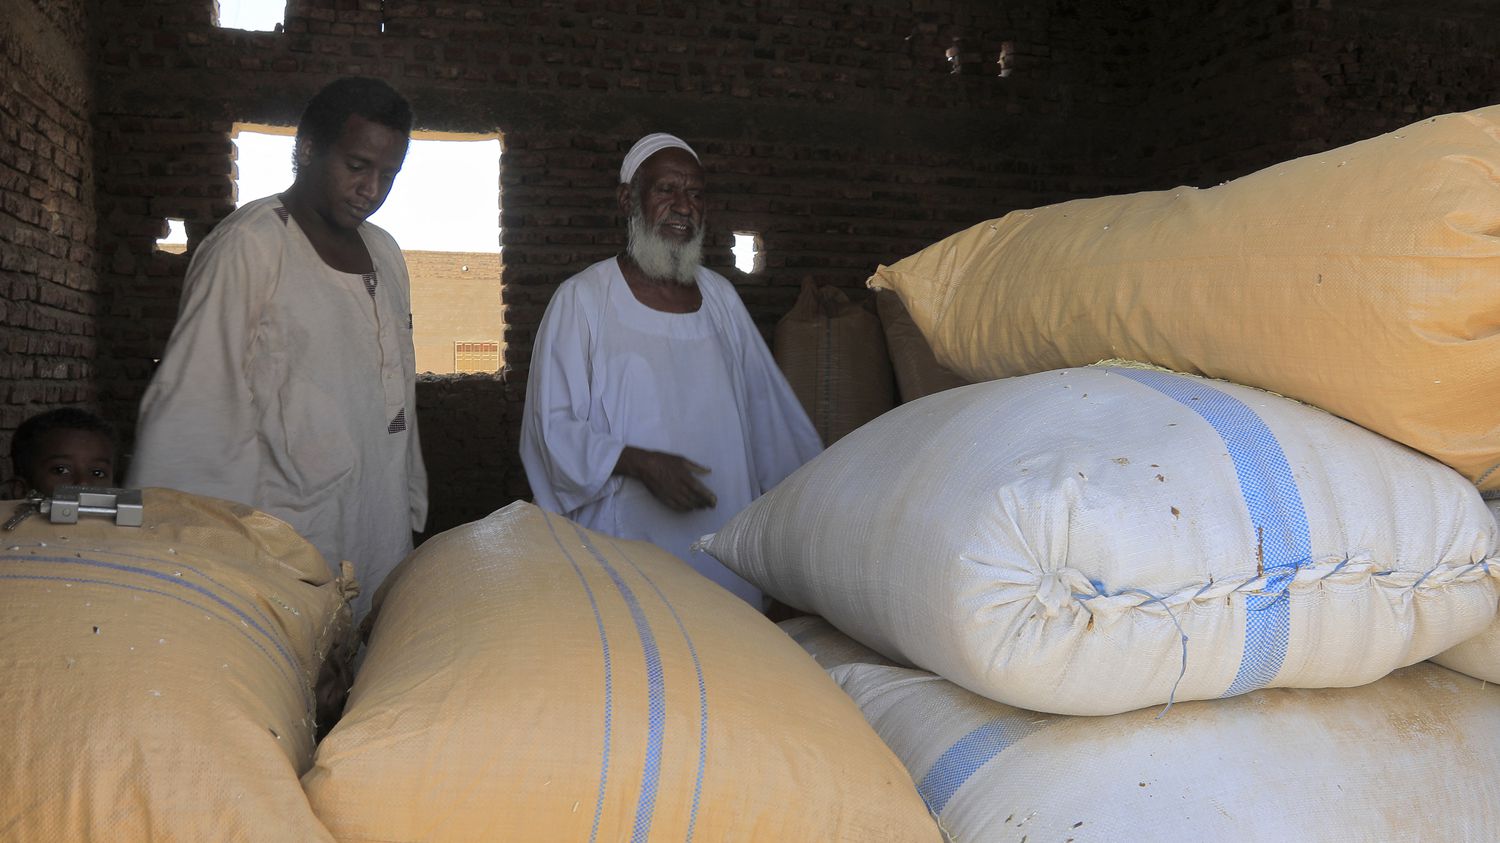 Sudan: Farmers struggle to sell wheat despite bread shortage
